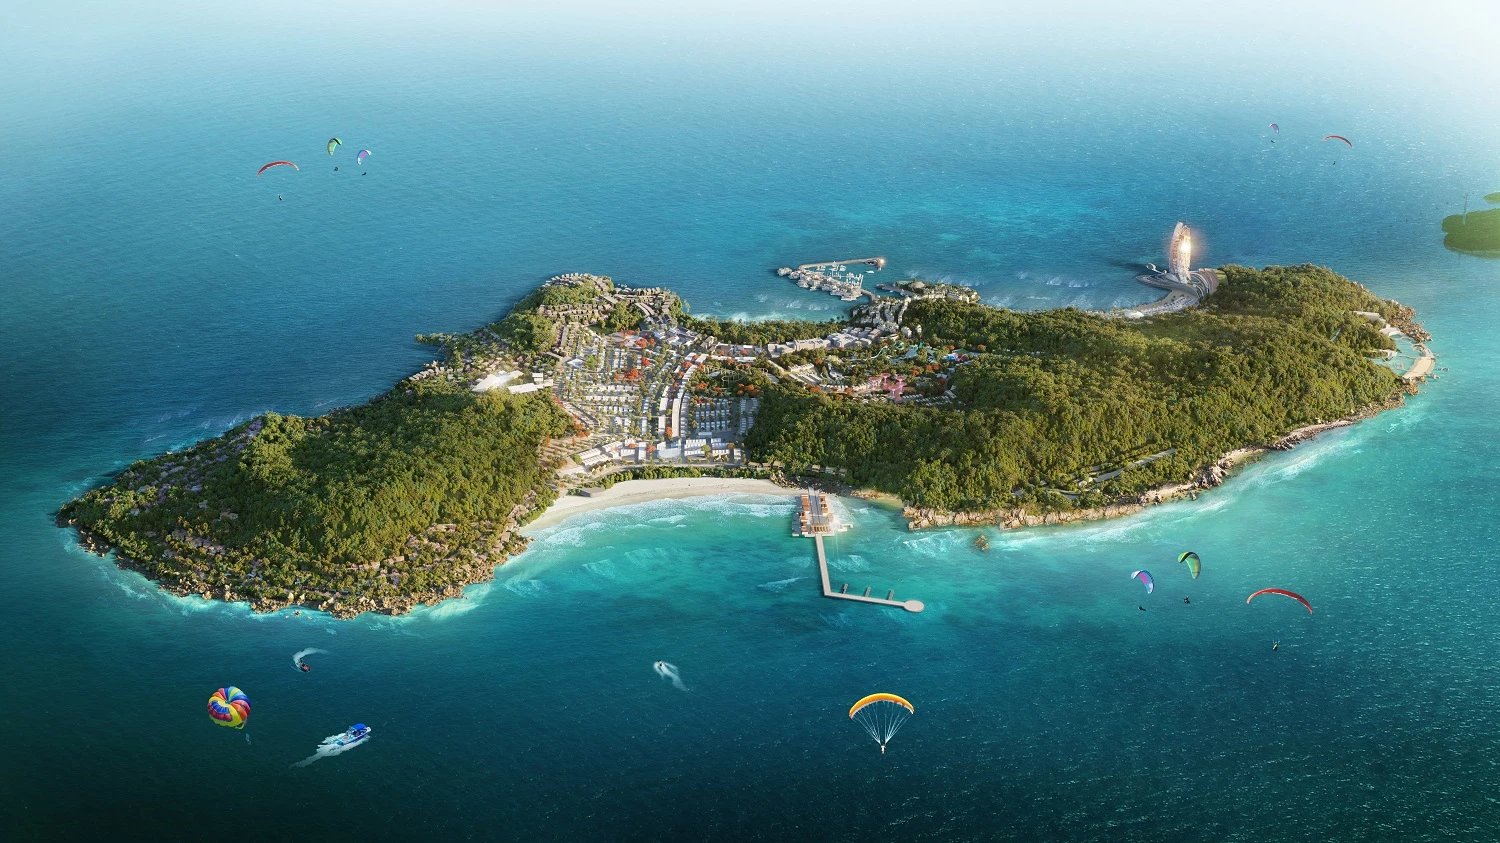 Phối cảnh minh họa toàn cảnh Hon Thom Paradise Island.